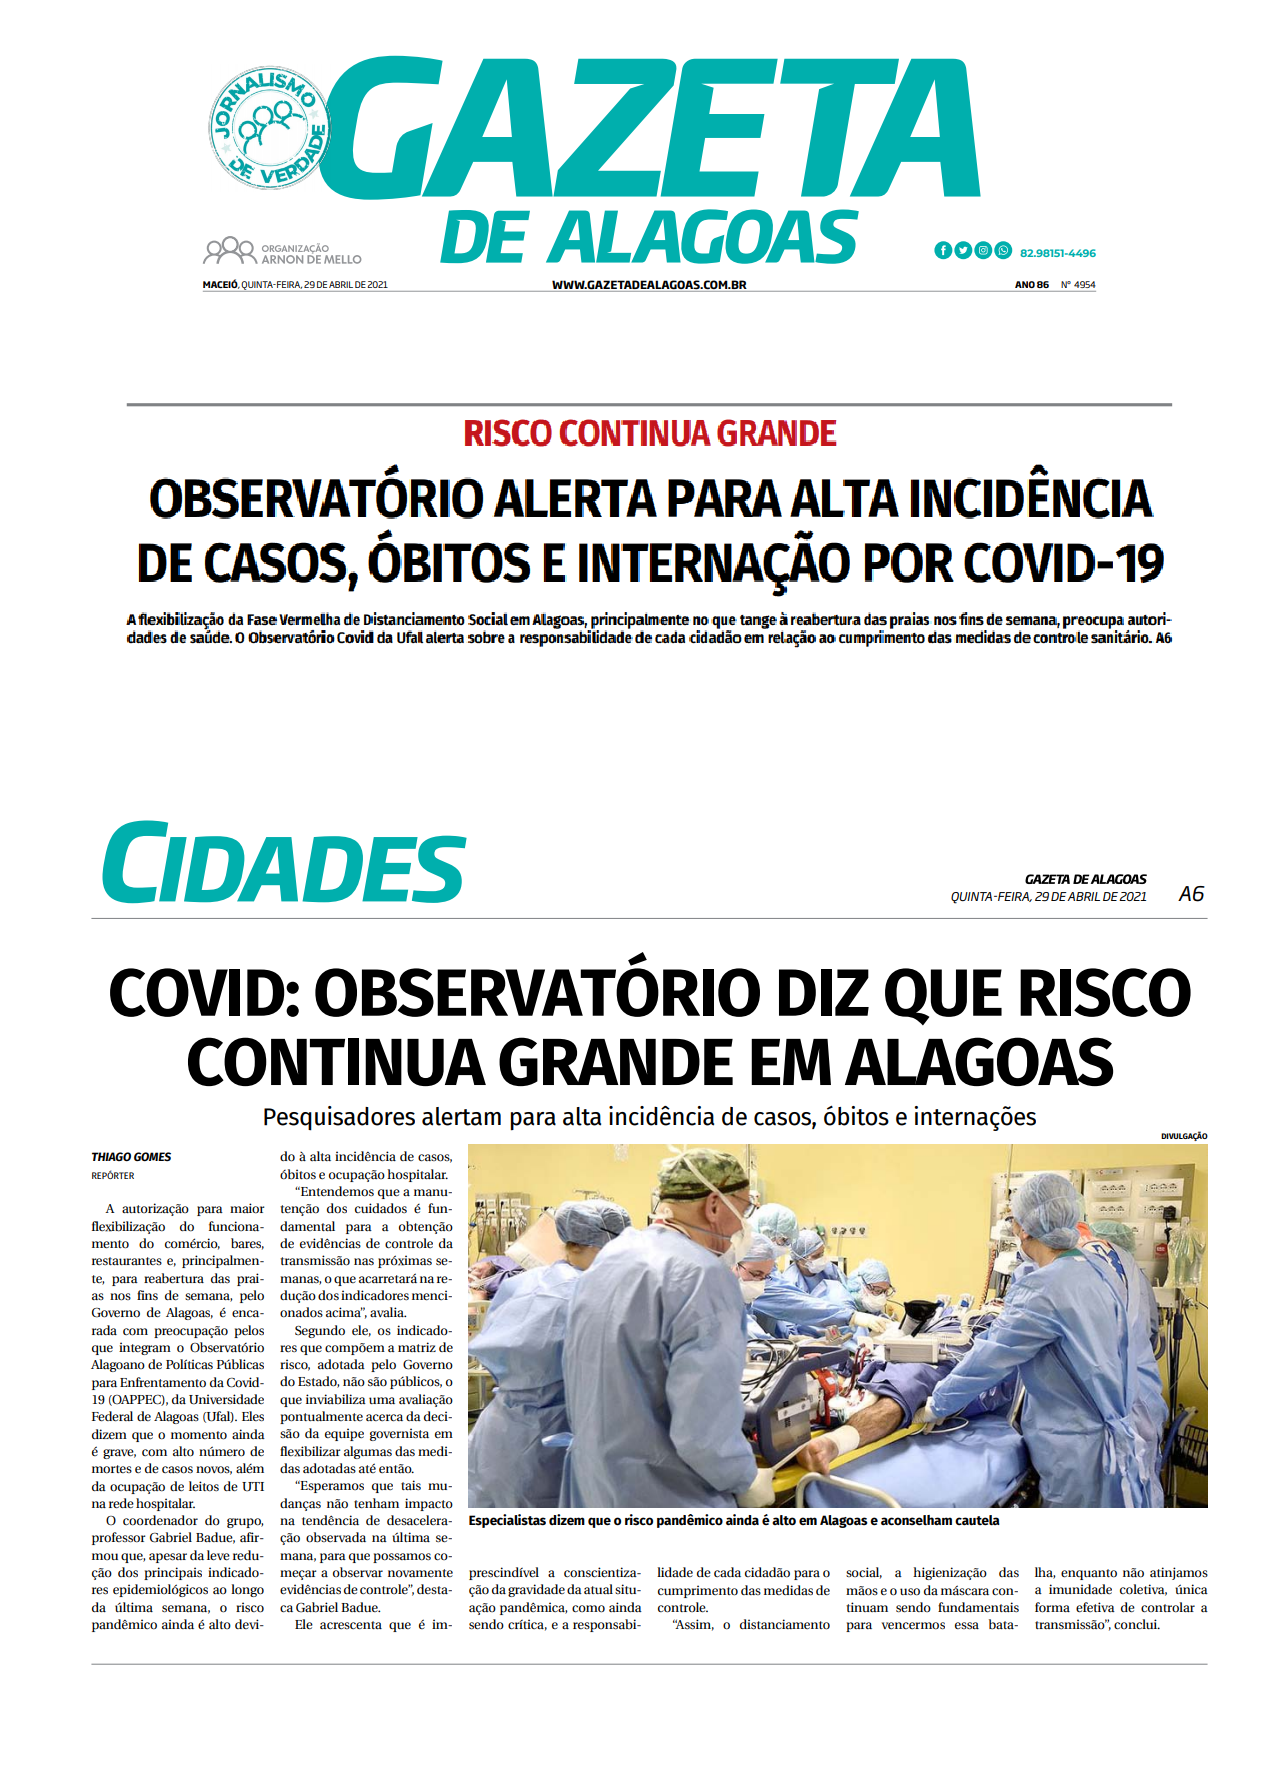 Gazeta de Alagoas - Cidades - COVID: OBSERVATÓRIO DIZ QUE RISCO CONTINUA GRANDE EM ALAGOAS